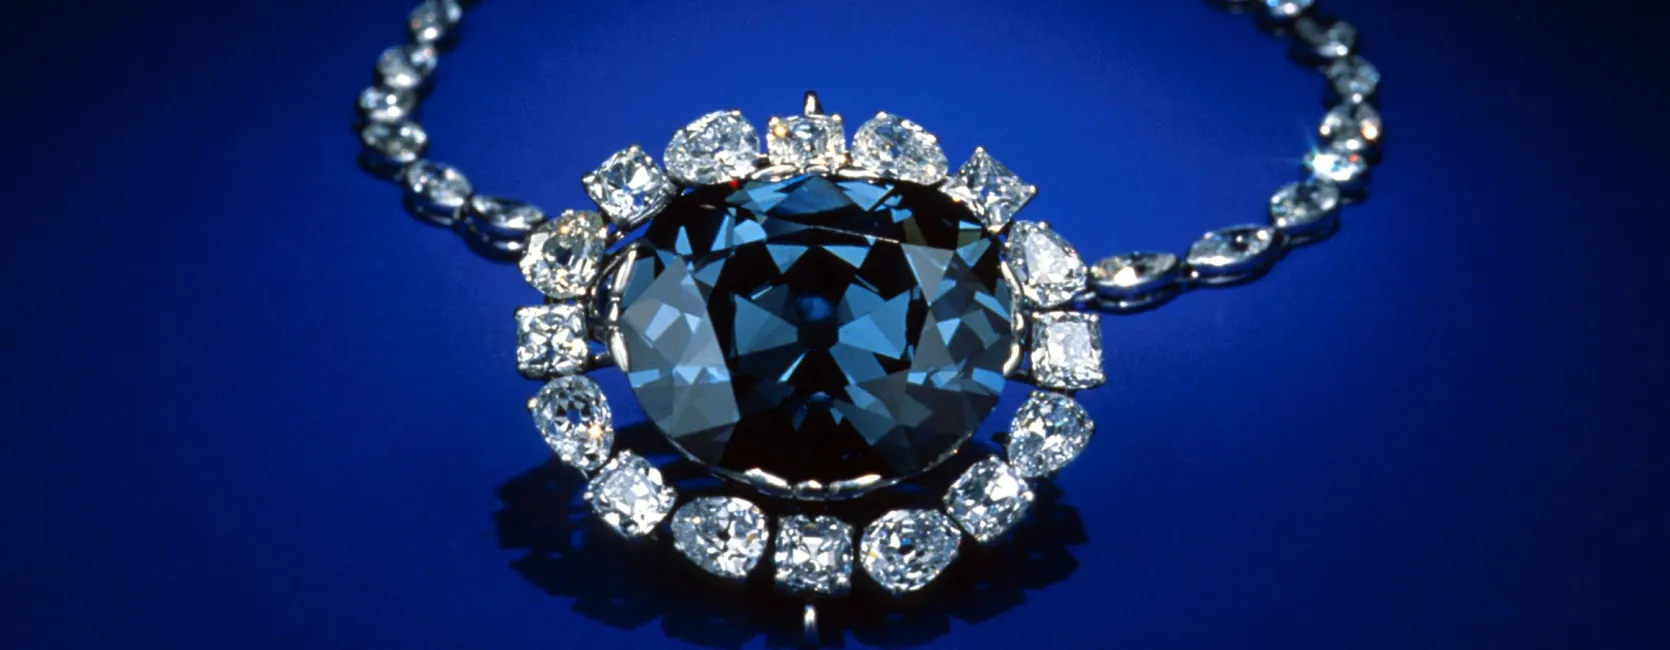 A blue diamond necklace on a blue background